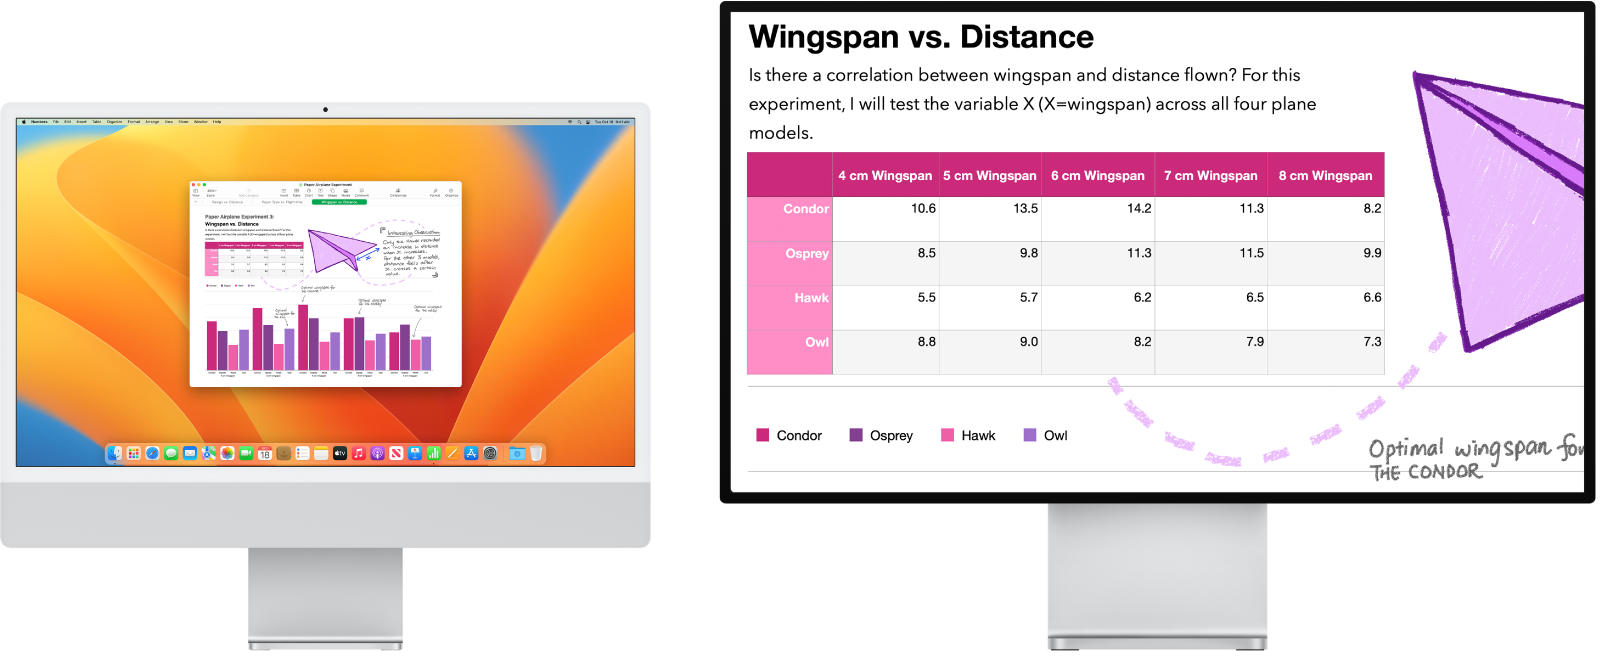 Layar Zoom aktif di layar kedua, sementara ukuran layar tetap di iMac.